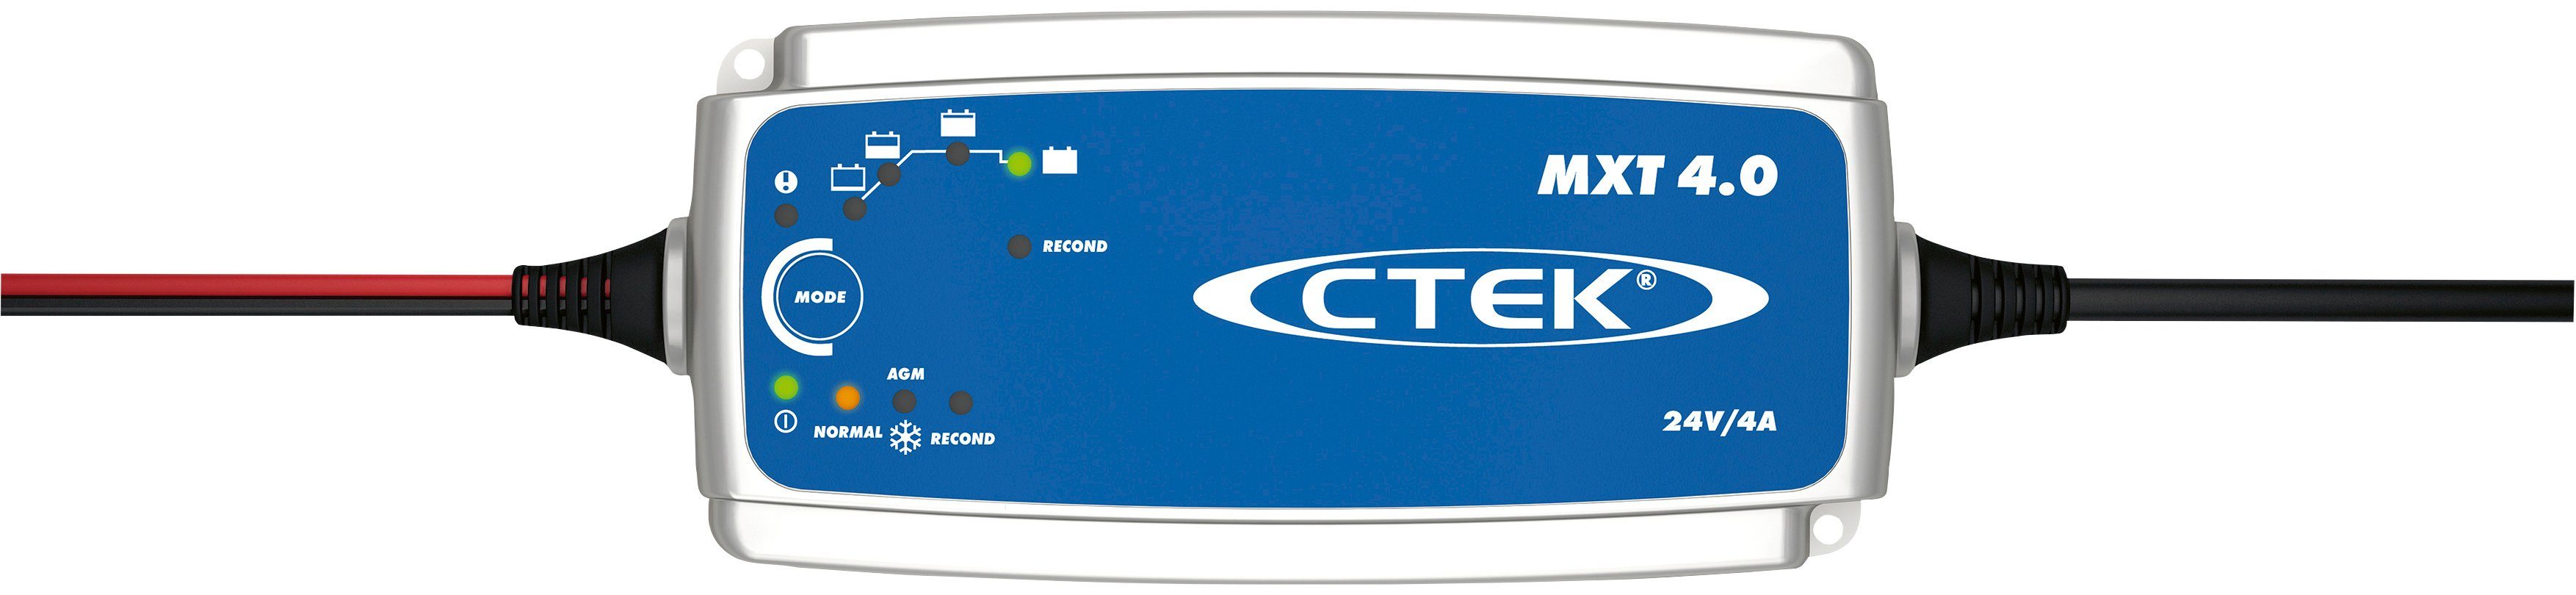 werden) (Kann verwendet 4.0 CTEK MXT Batterie-Ladegerät Stromversorgung als